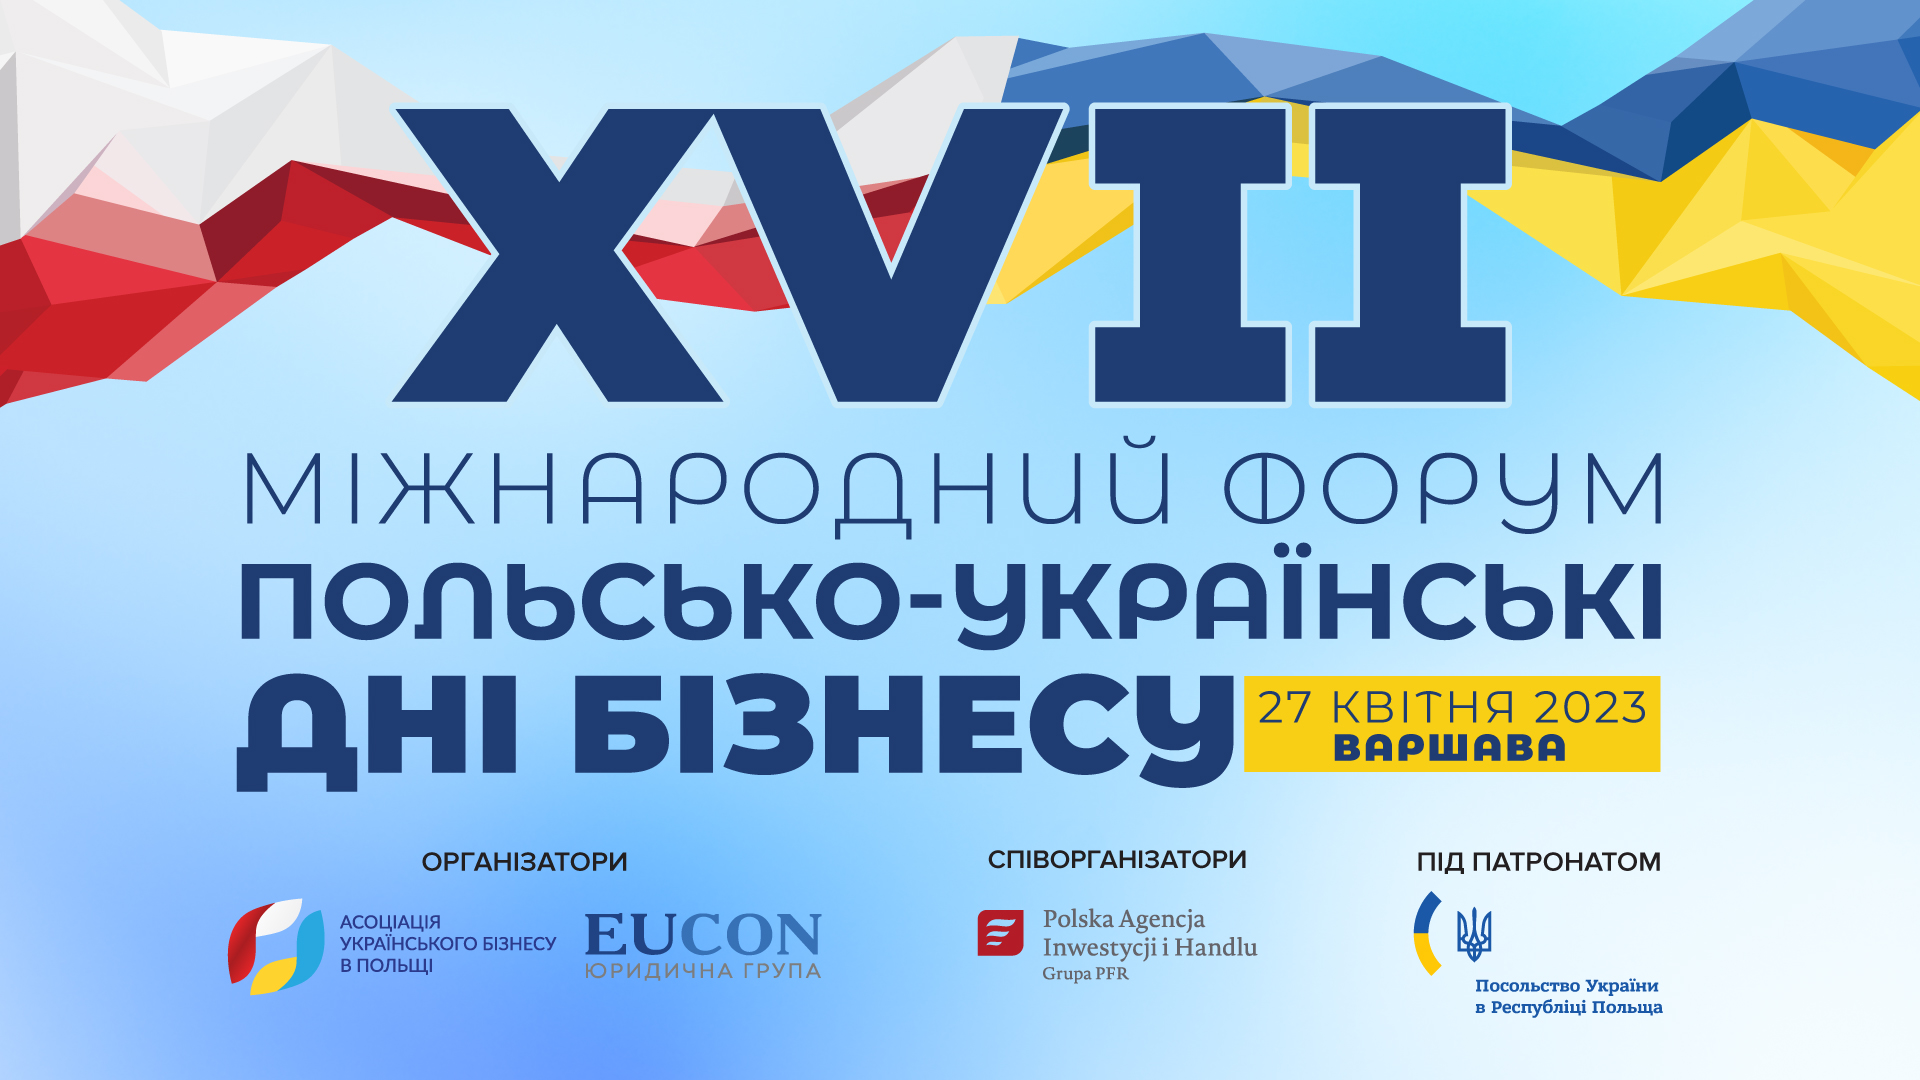 27 апреля в Варшаве состоится XVII Международный форум «Польско-украинские дни бизнеса»